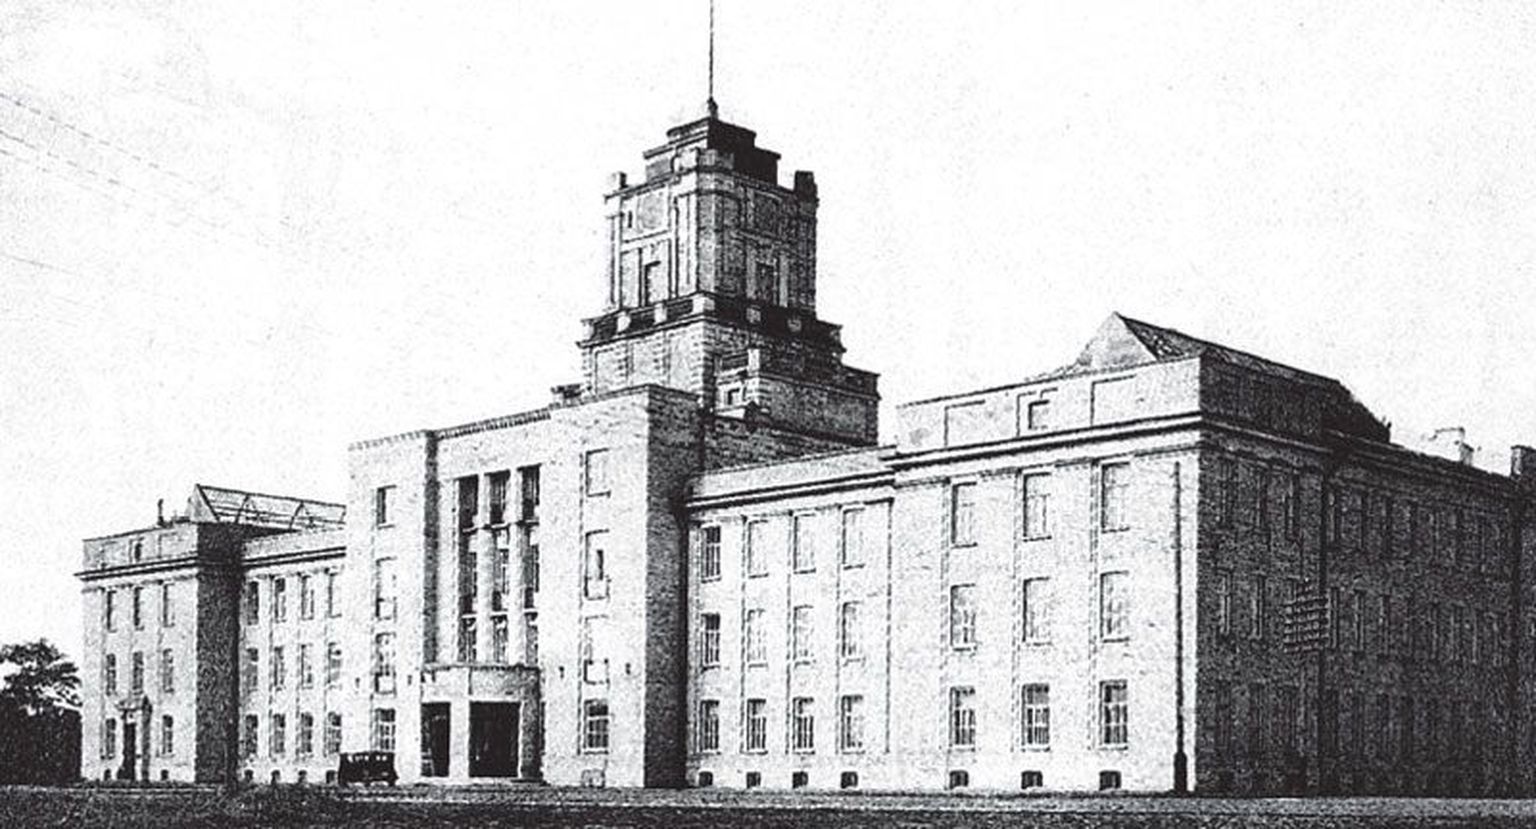 Endine Vene Balti laevatehase administratiivhoone on tänapäeval Tallinna Tehnikaülikooli majandusteaduskonna maja. Aastatel 19321964 oli see aga kasutusel õppeasutuse peahoonena.